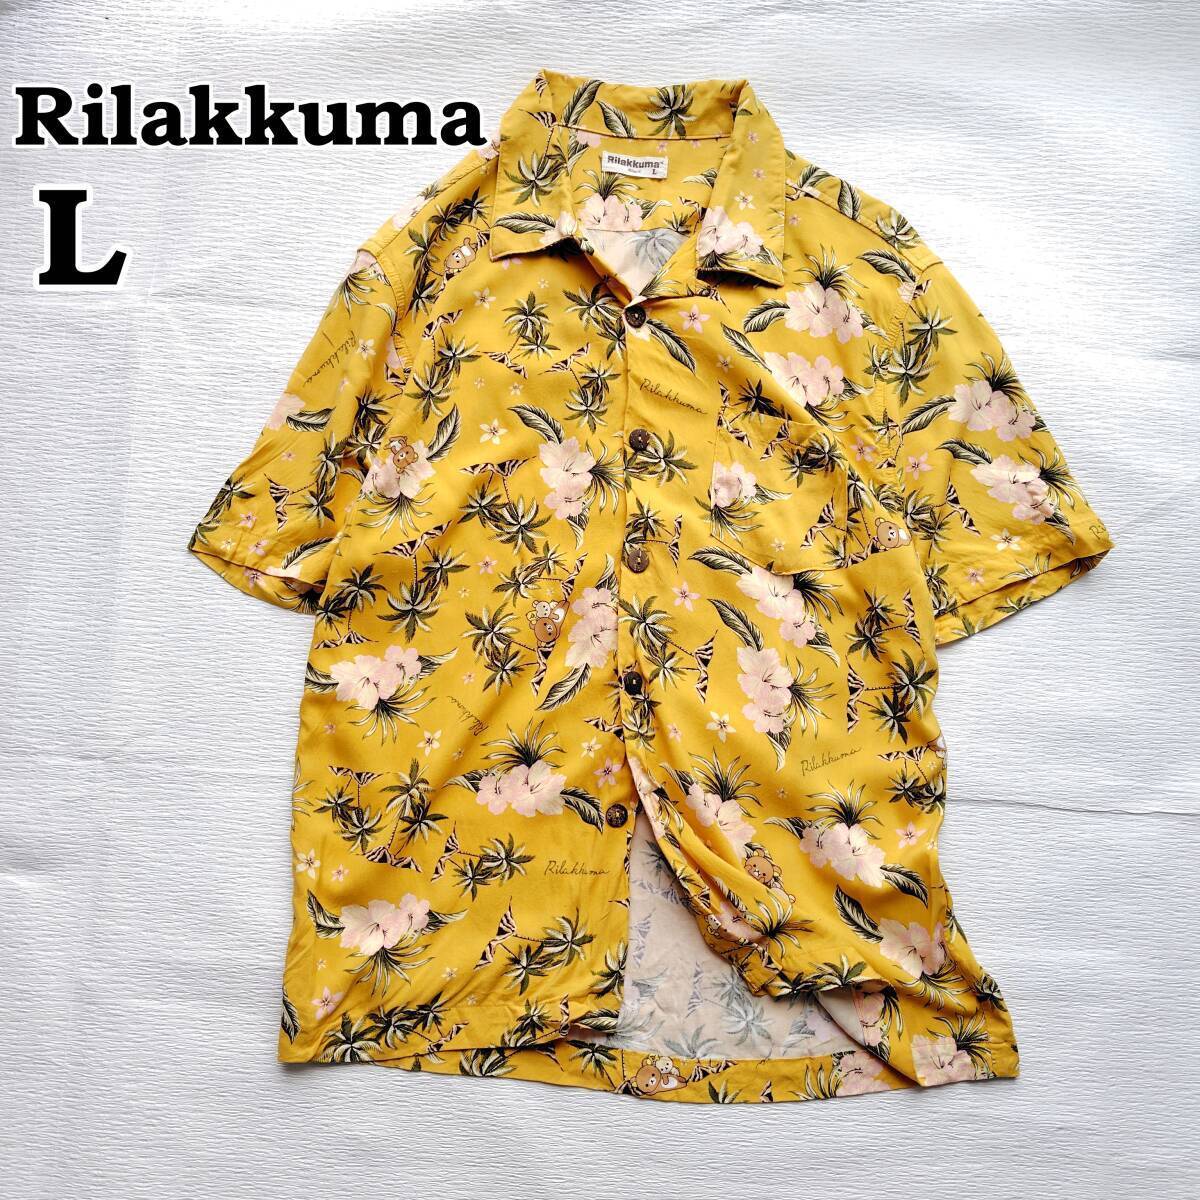 Rilakkuma Aloha Shirt L Unisex Lemon Mustard 240609-03 japan